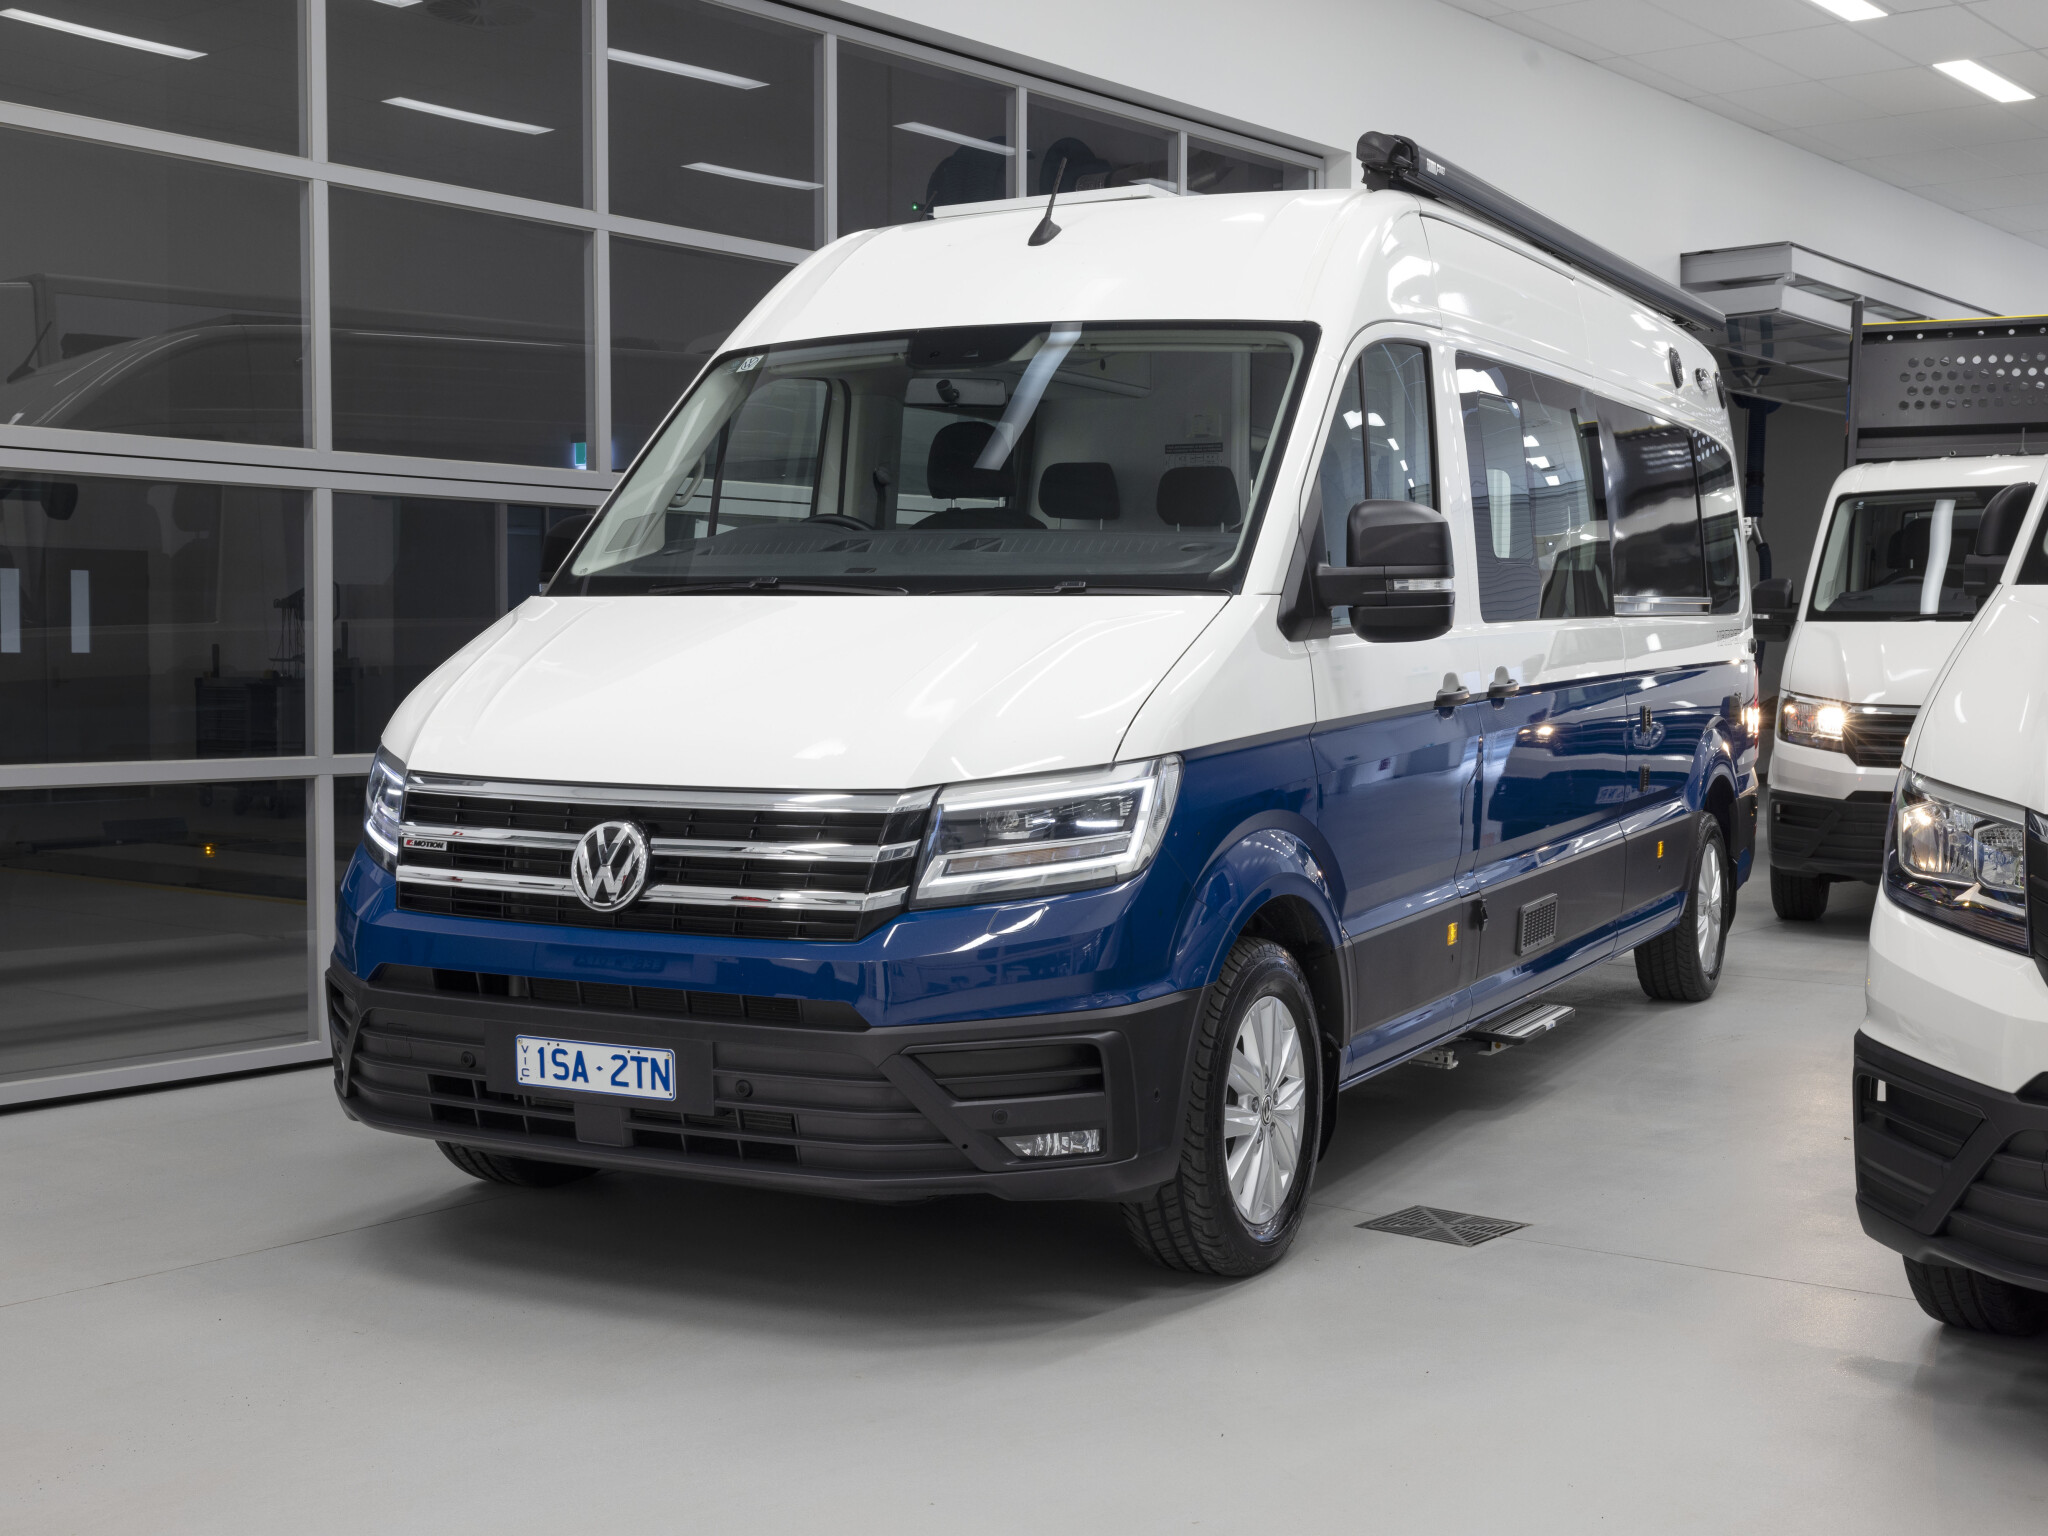 2023 Volkswagen Crafter Kampervan pricing and features